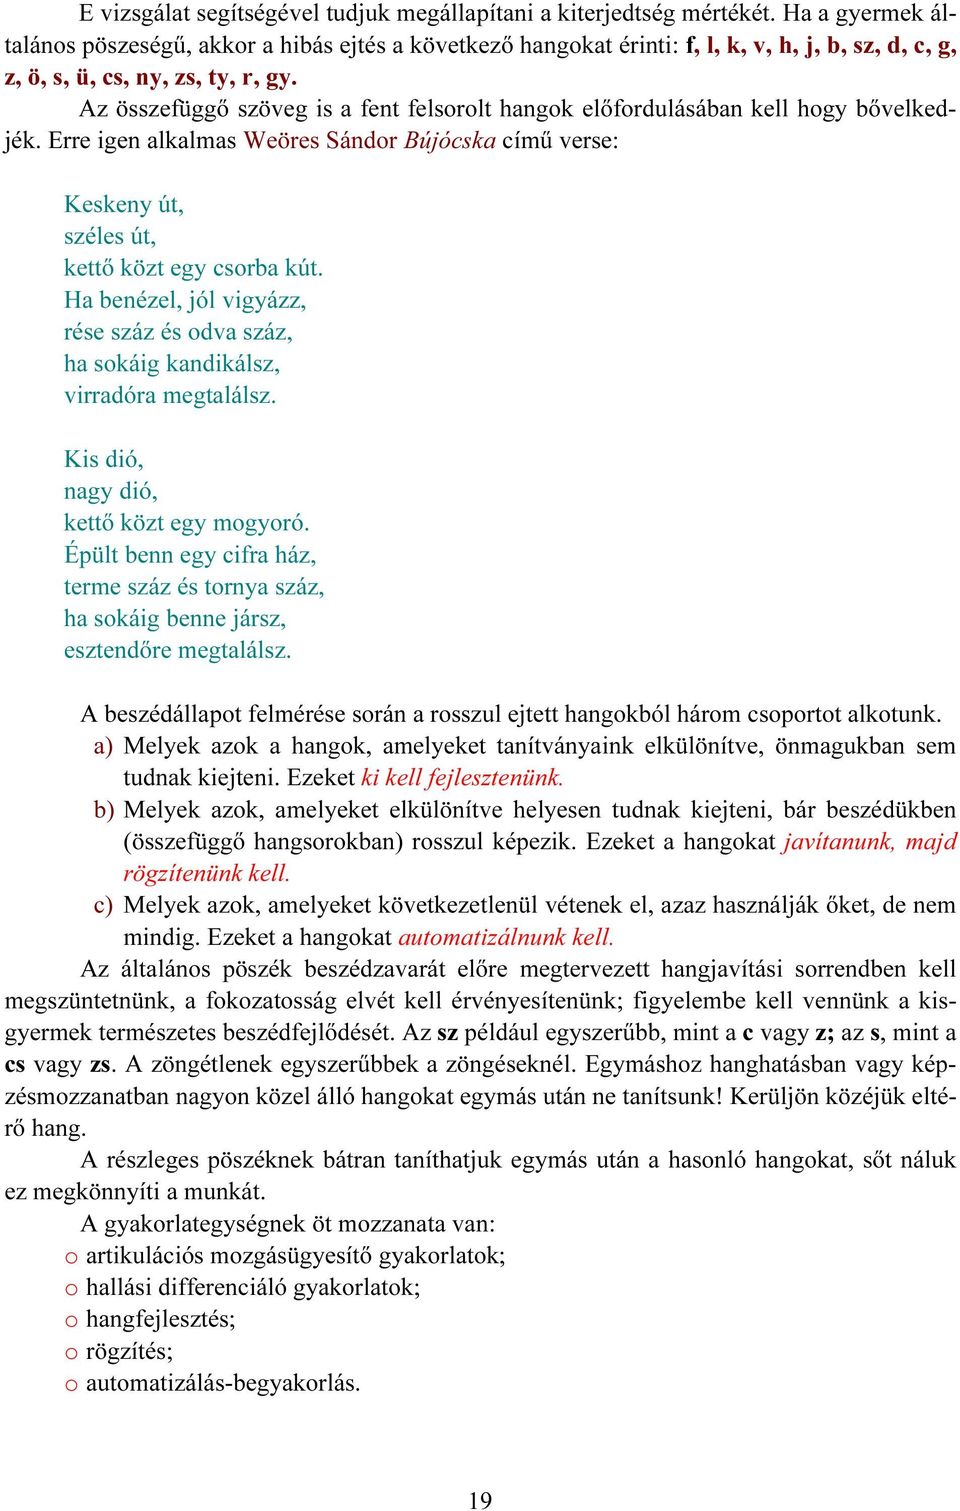 I. A BESZÉDTECHNIKA 1. A BESZÉD MECHANIZMUSA - PDF Ingyenes letöltés